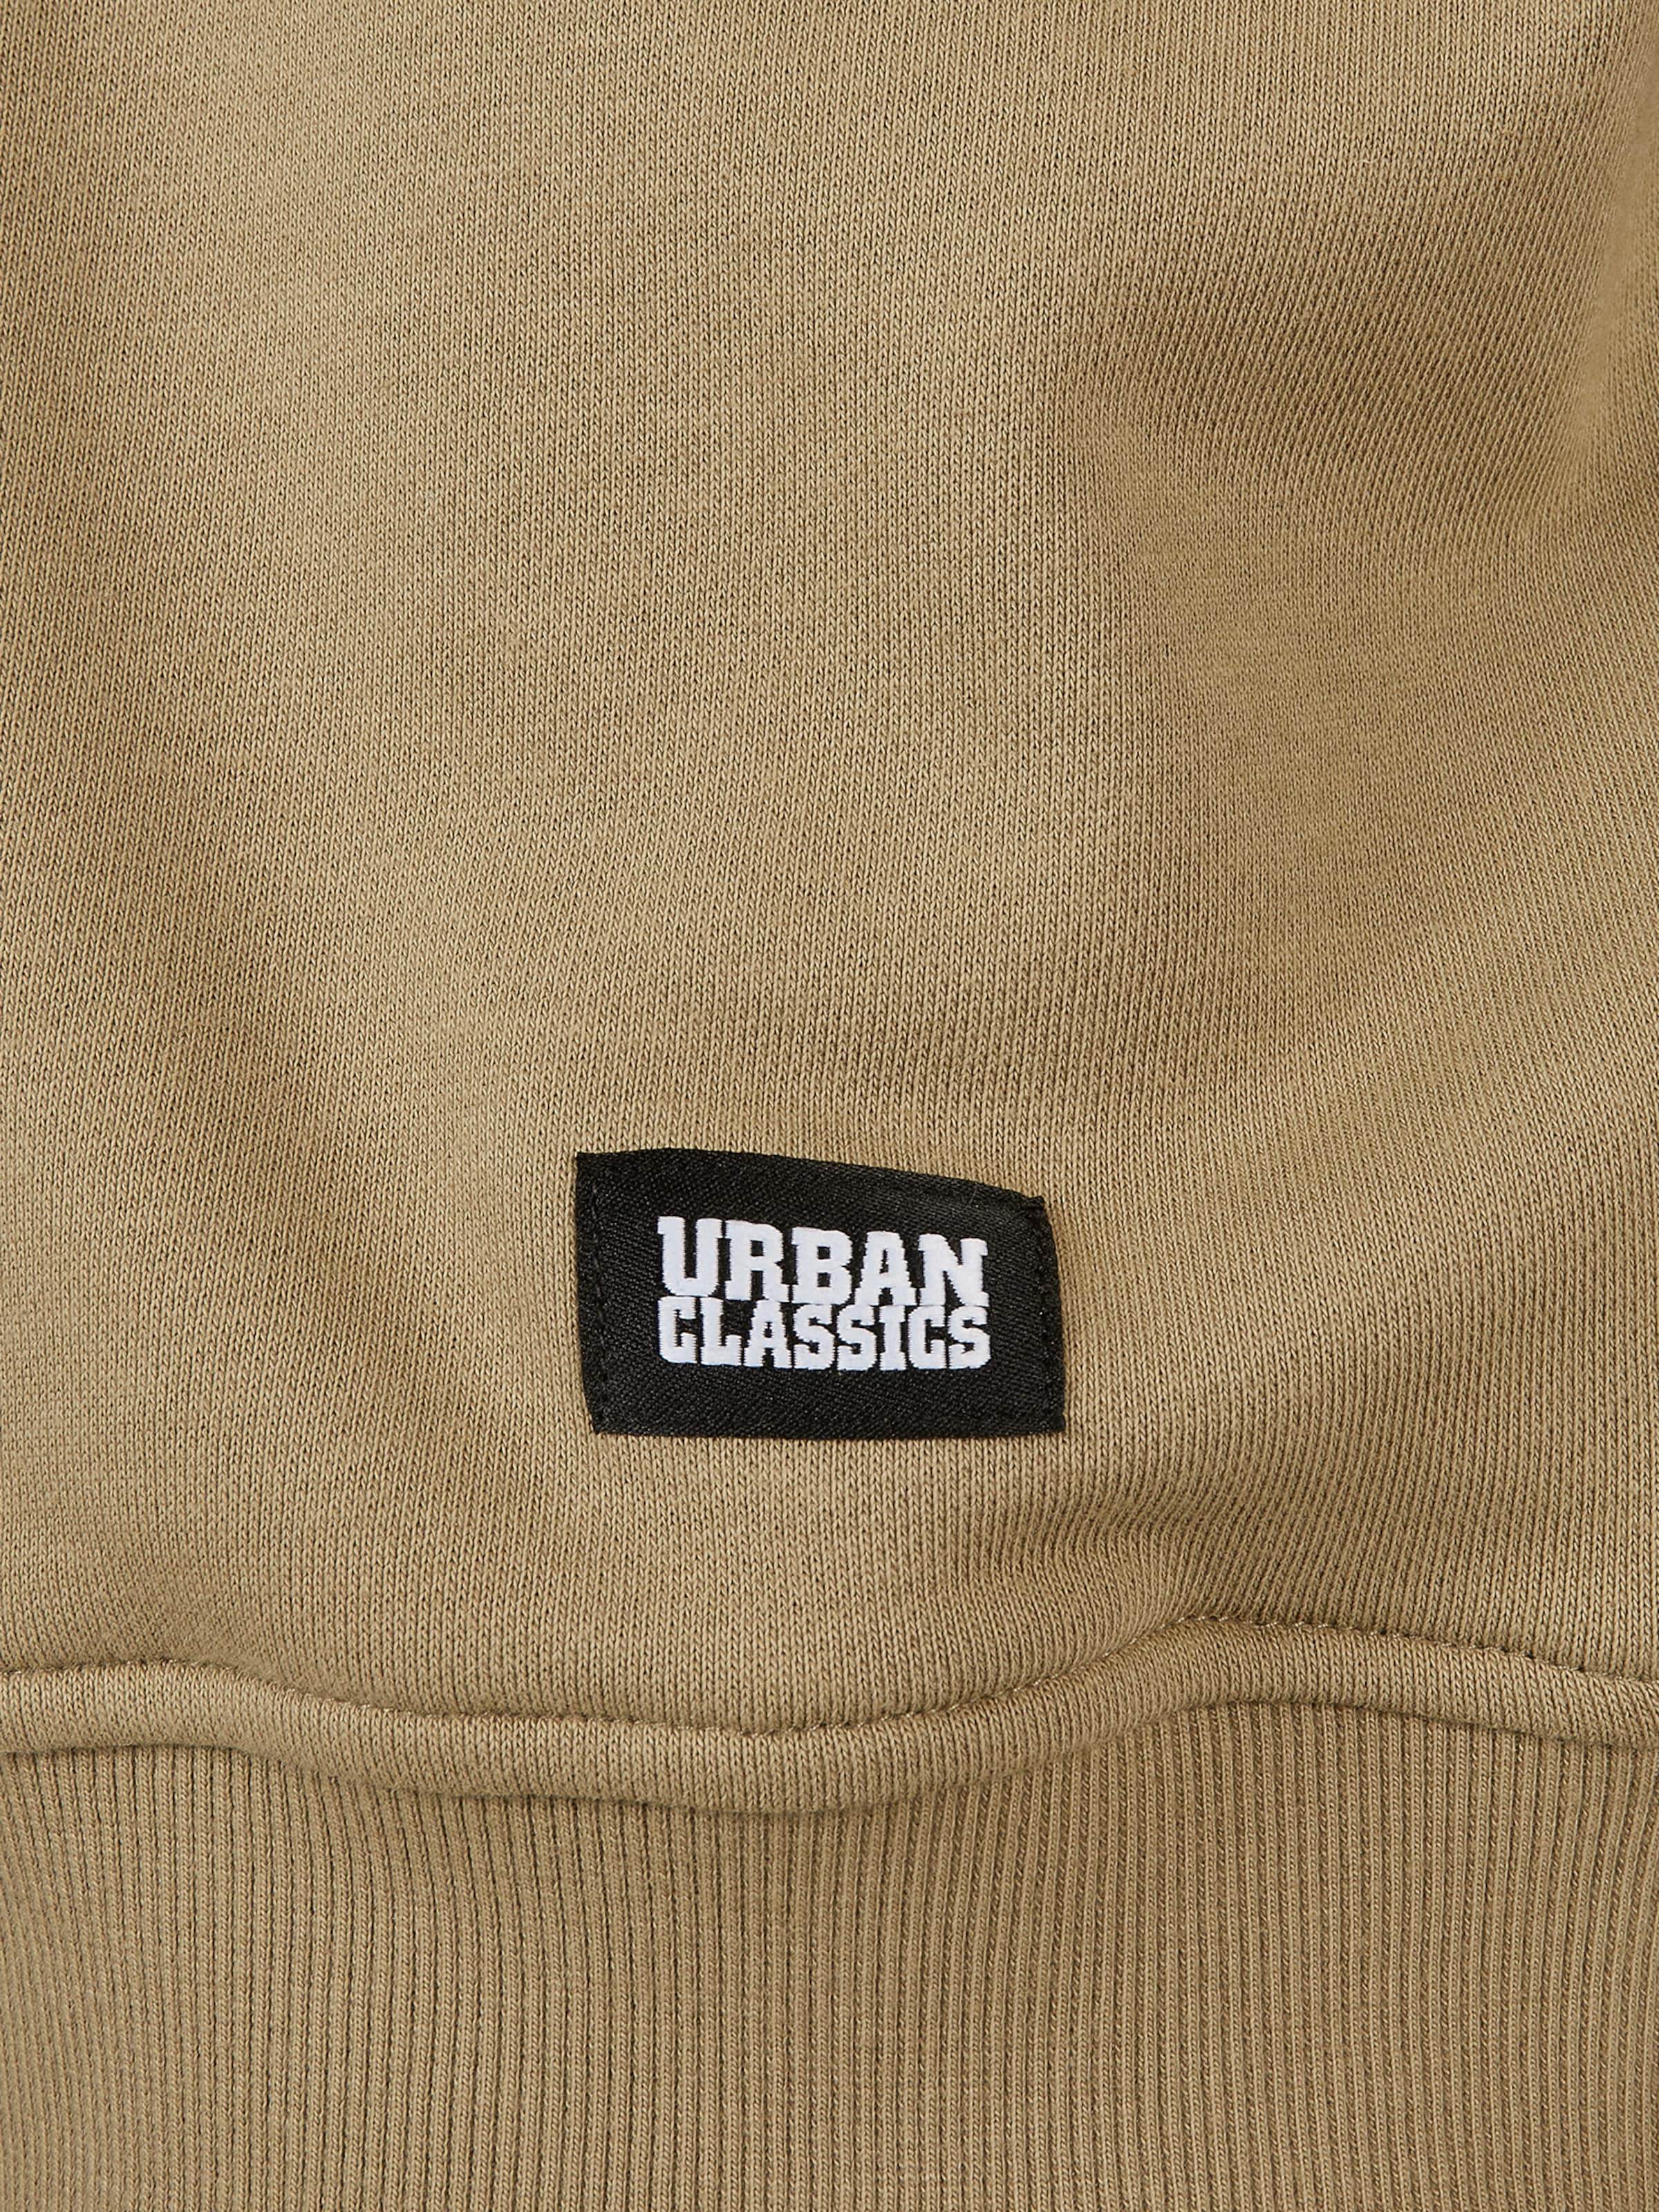 Männer Große Größen Urban Classics Sweatshirt in Beige - IX59982